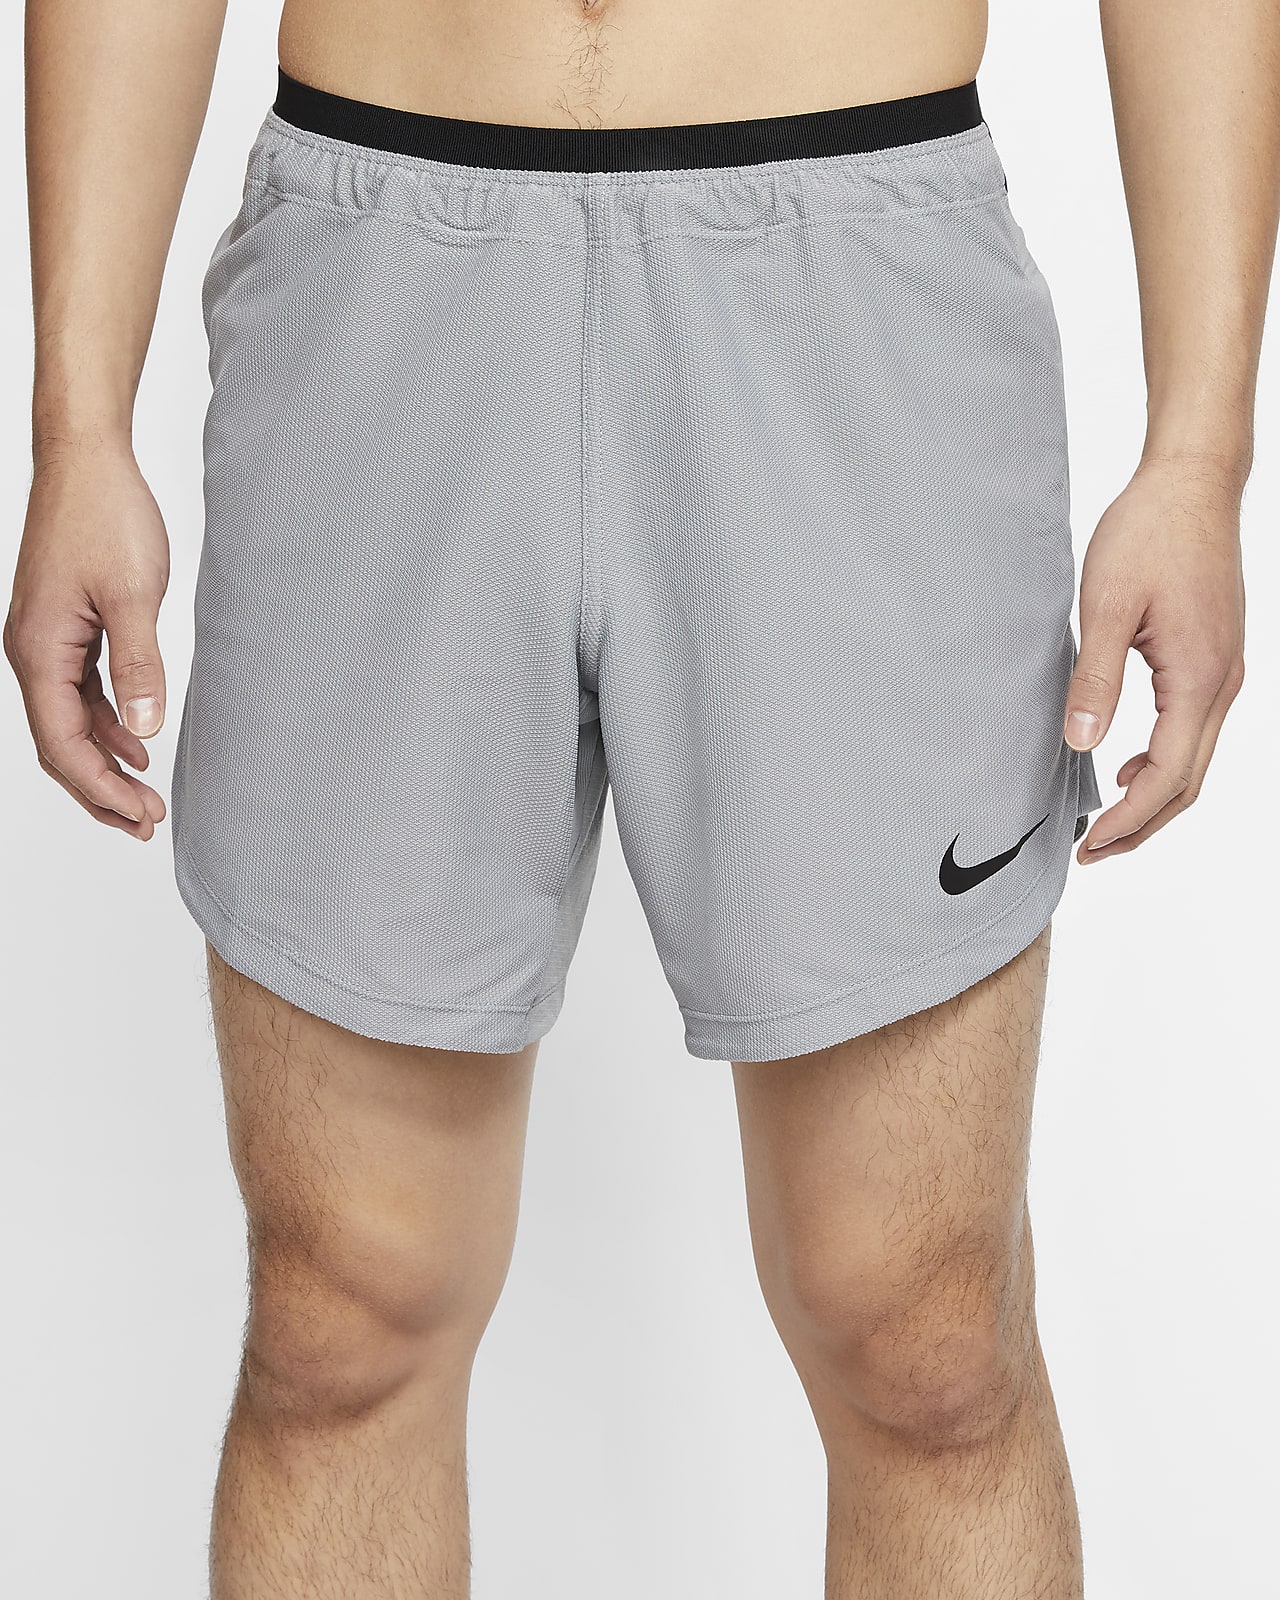 nike spandex shorts sale